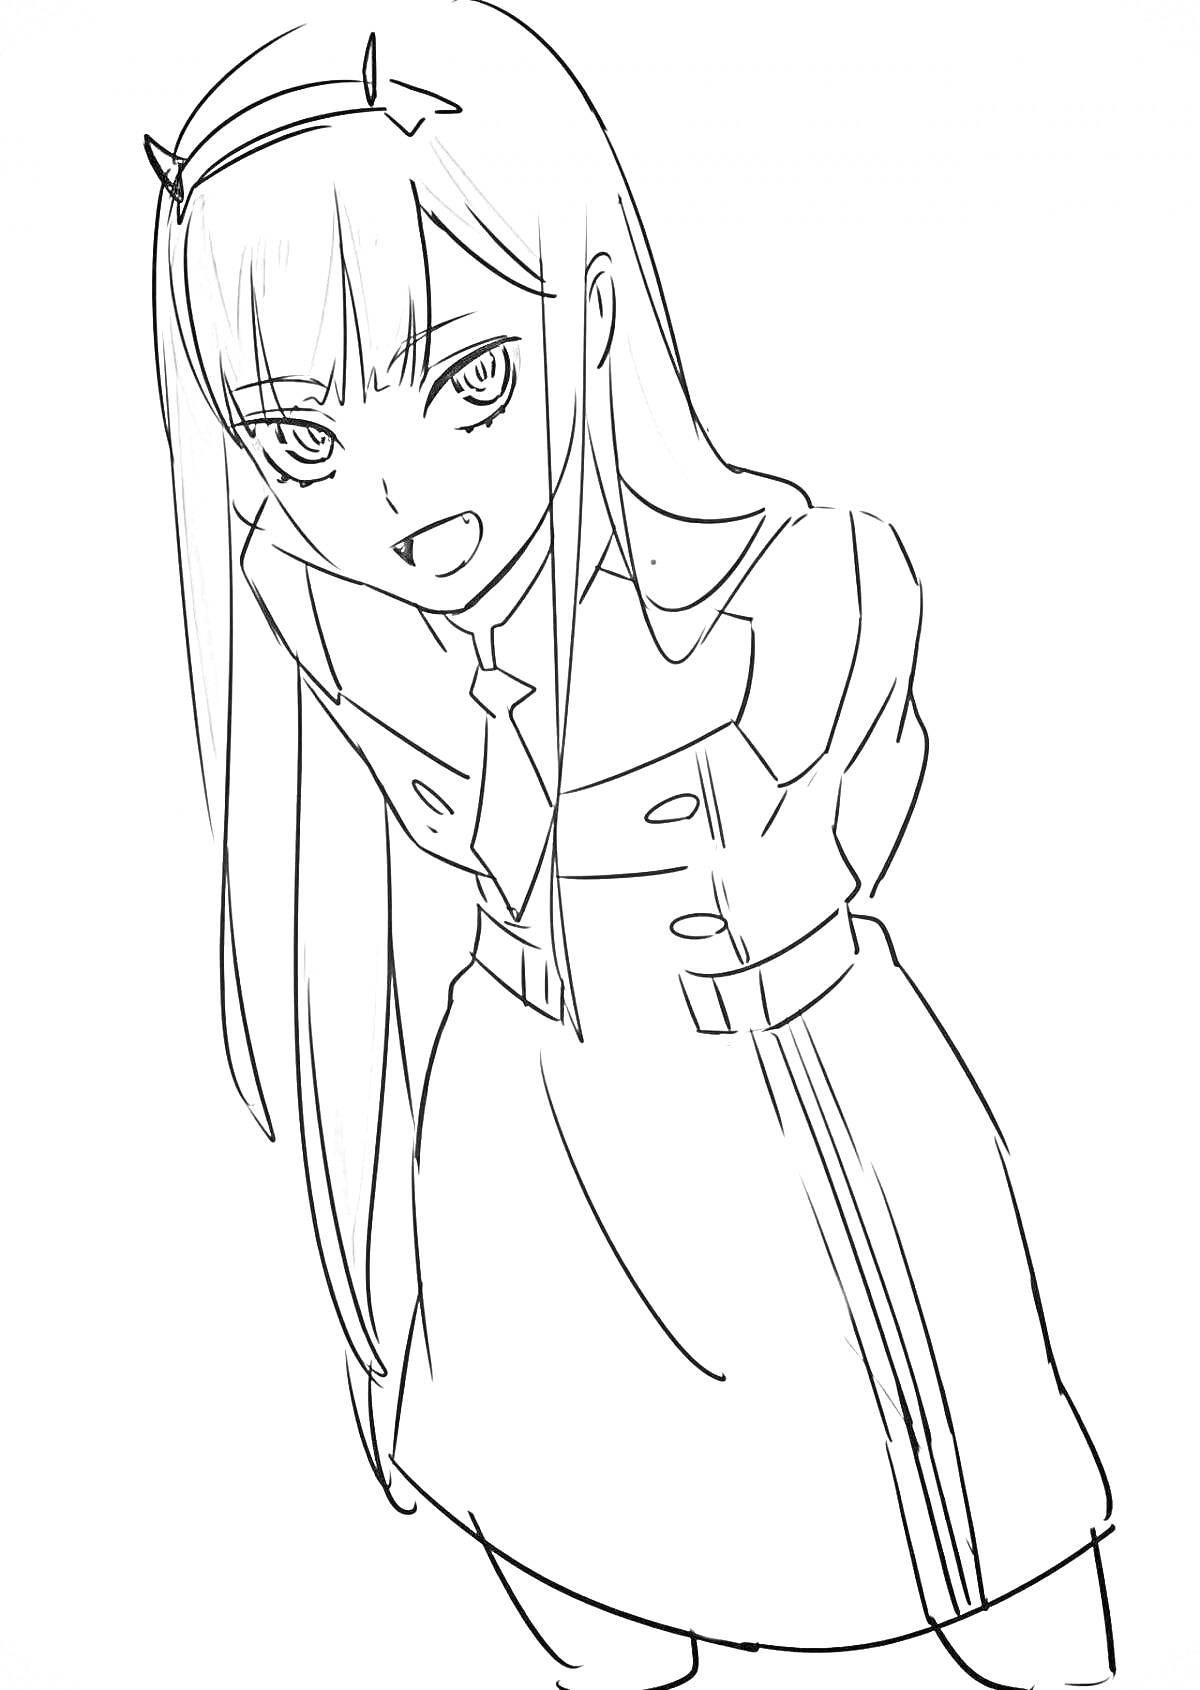 Раскраска Девочка из аниме с длинными волосами, наклонившаяся вперёд, в платье с длинными рукавами и кнопками